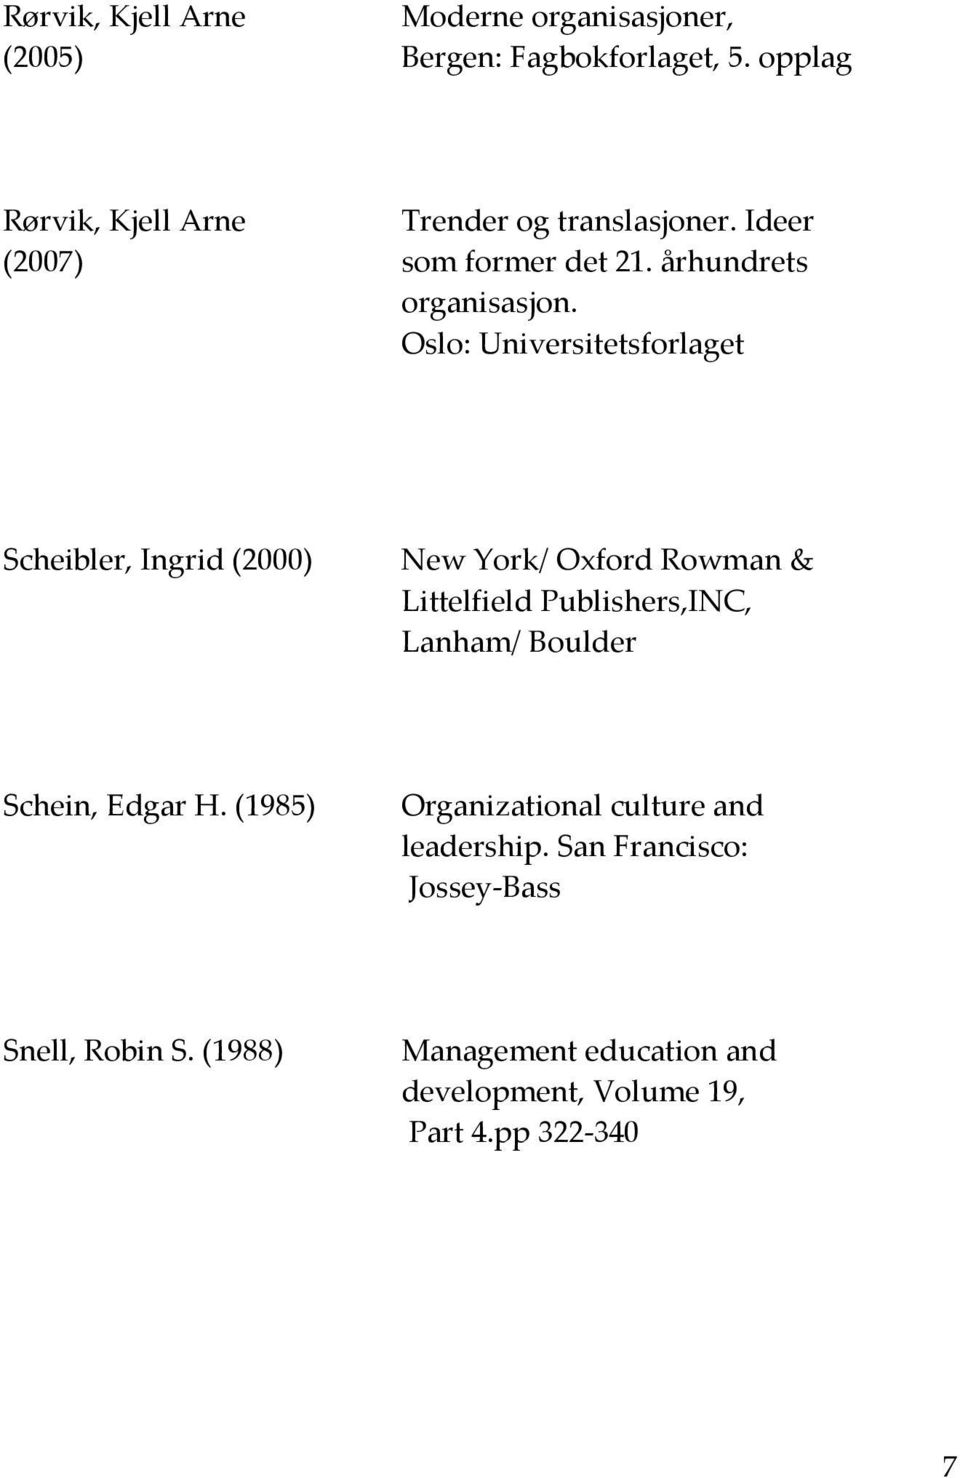 Oslo: Universitetsforlaget Scheibler, Ingrid (2000) New York/ Oxford Rowman & Littelfield Publishers,INC, Lanham/ Boulder